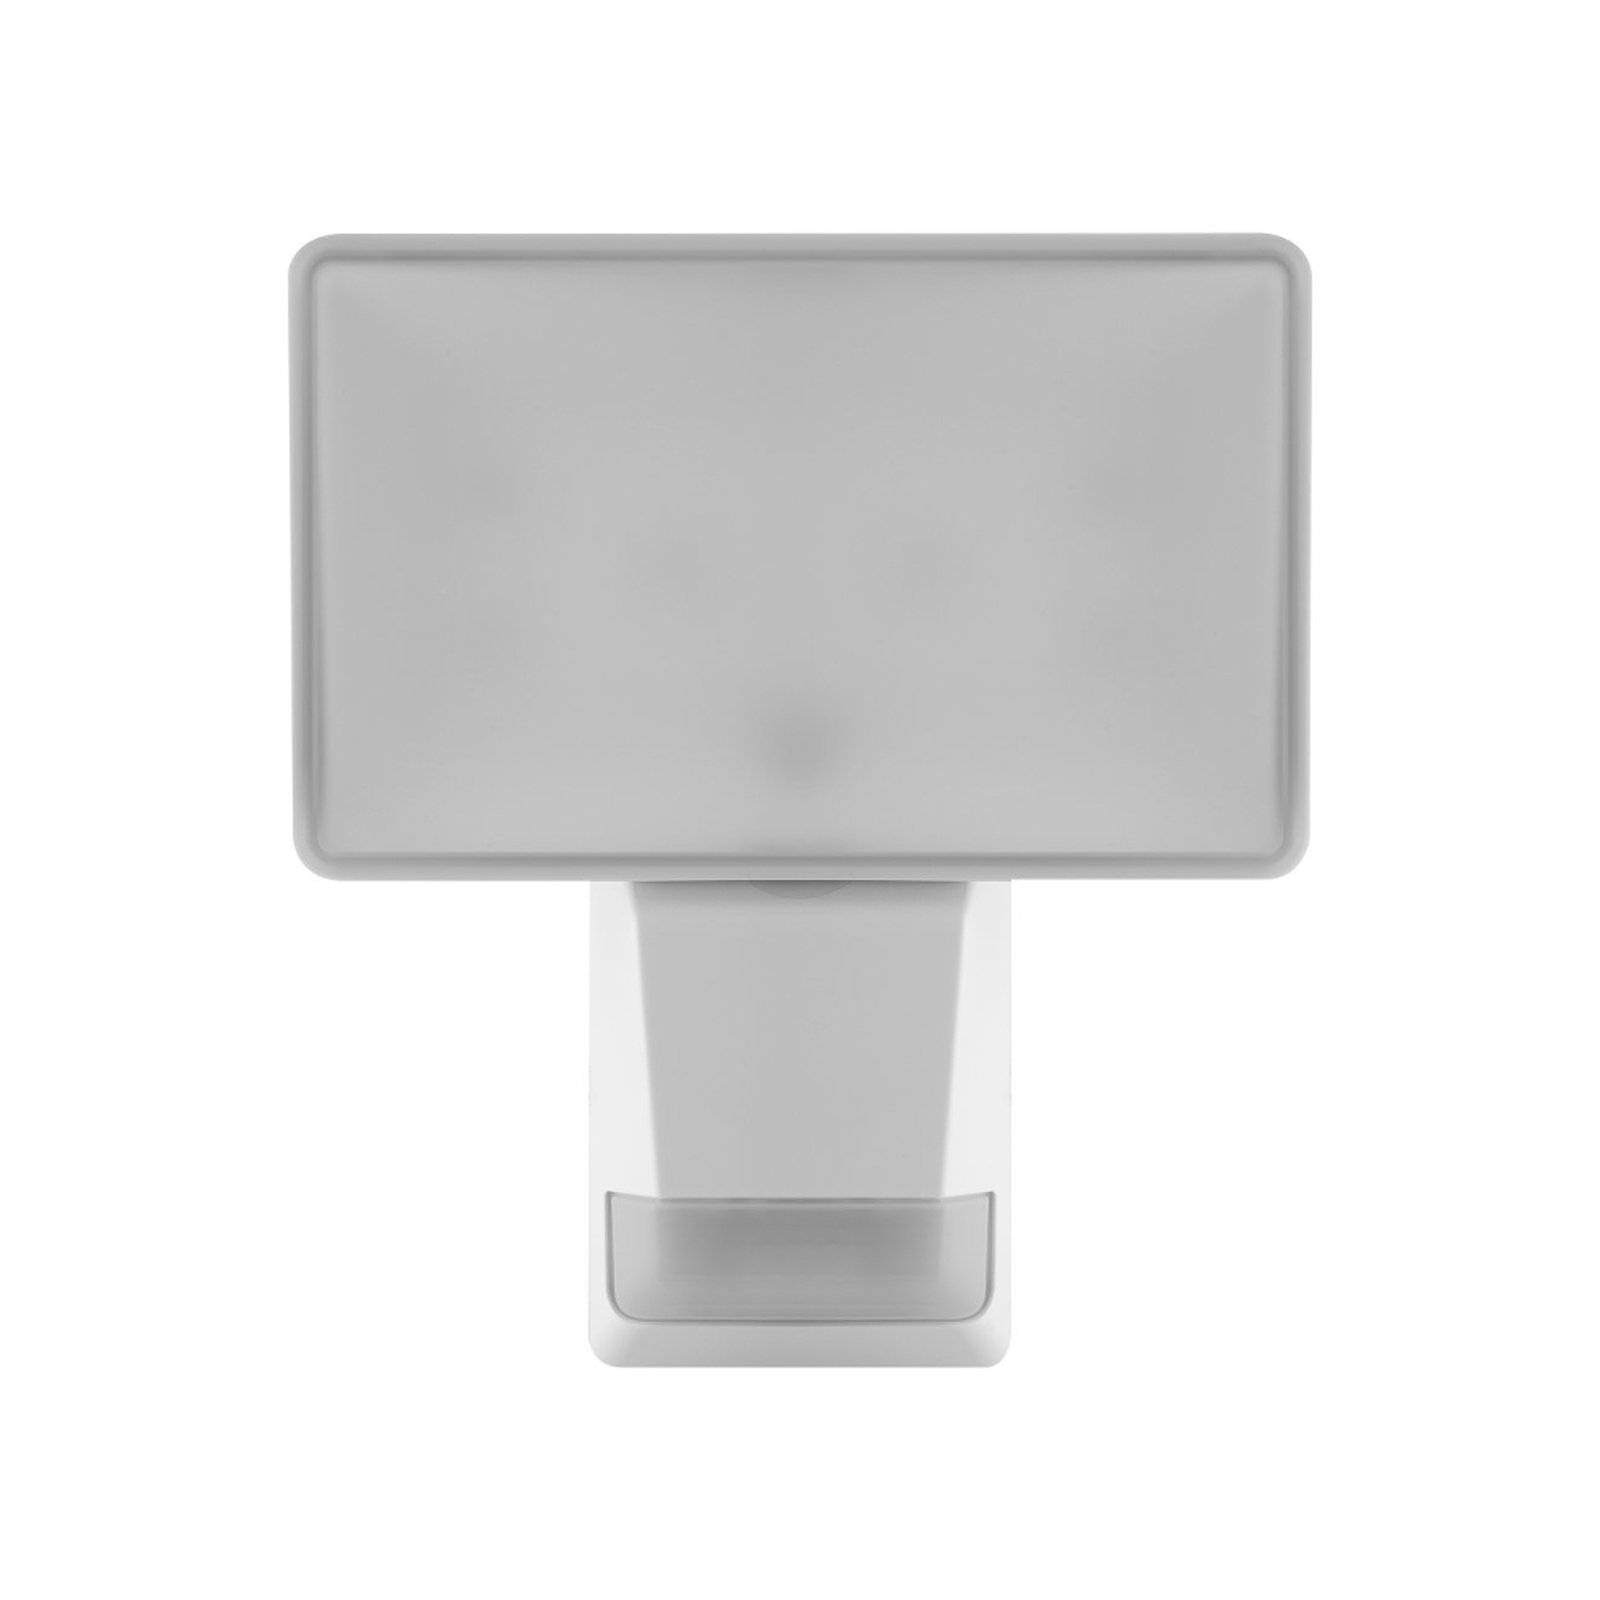 LEDVANCE Endura Pro Flood Sensor LED-spotti 27W valkoinen